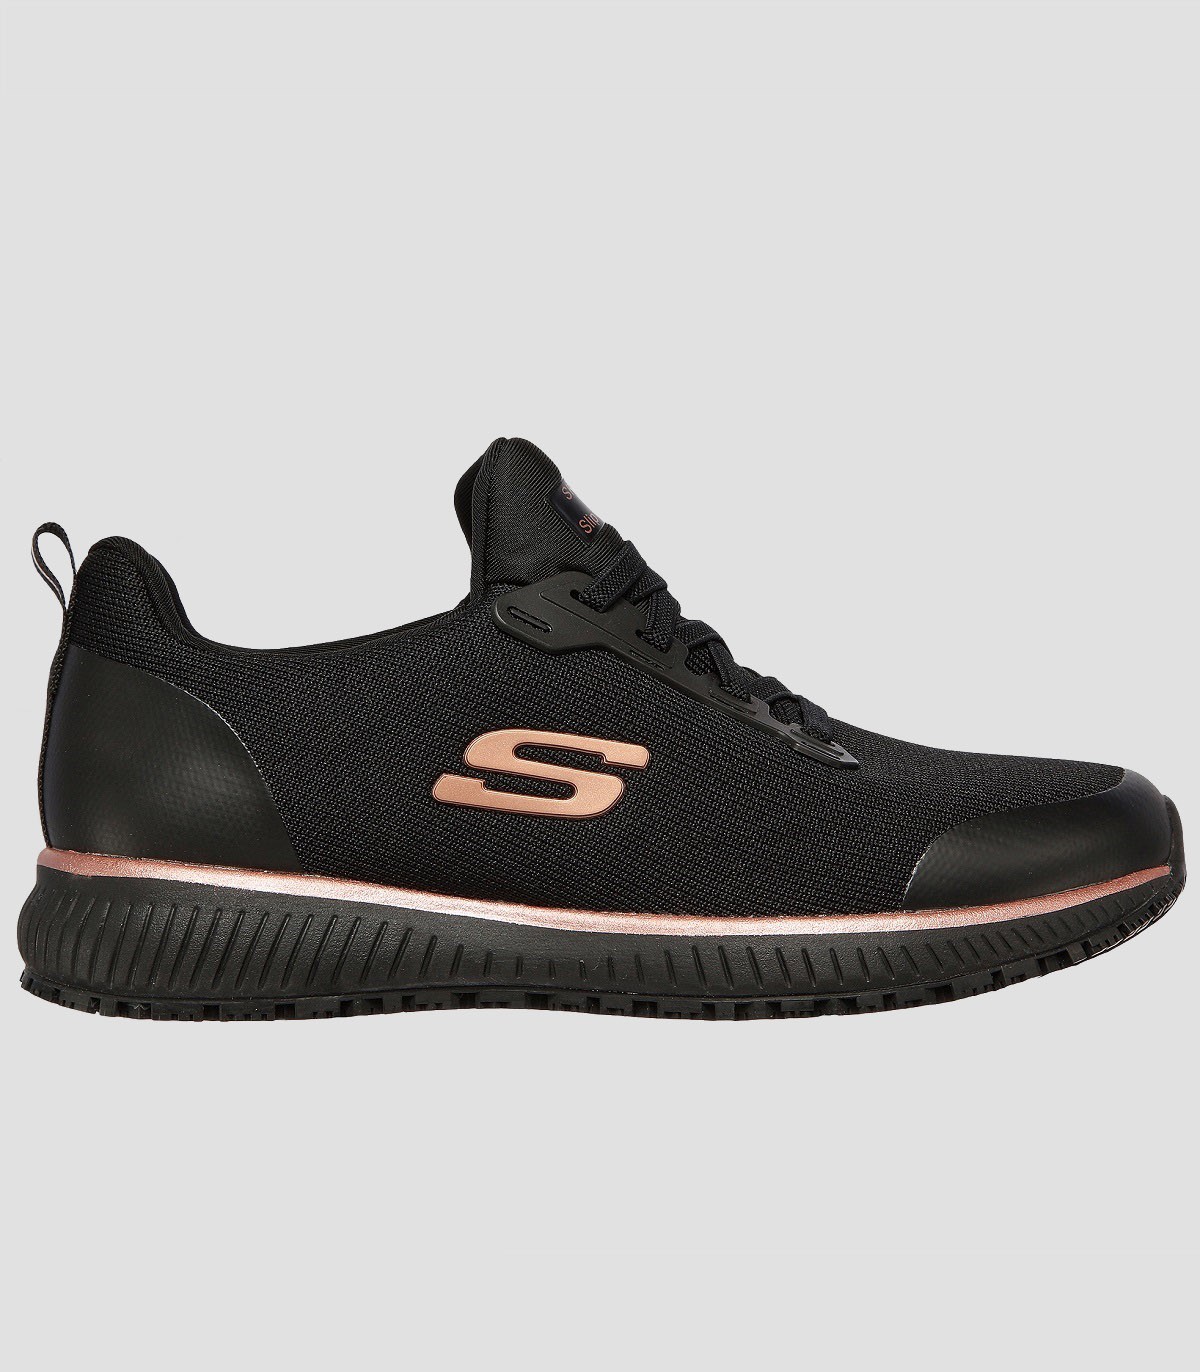 Zapato laboral Skechers negro con cordones elásticos